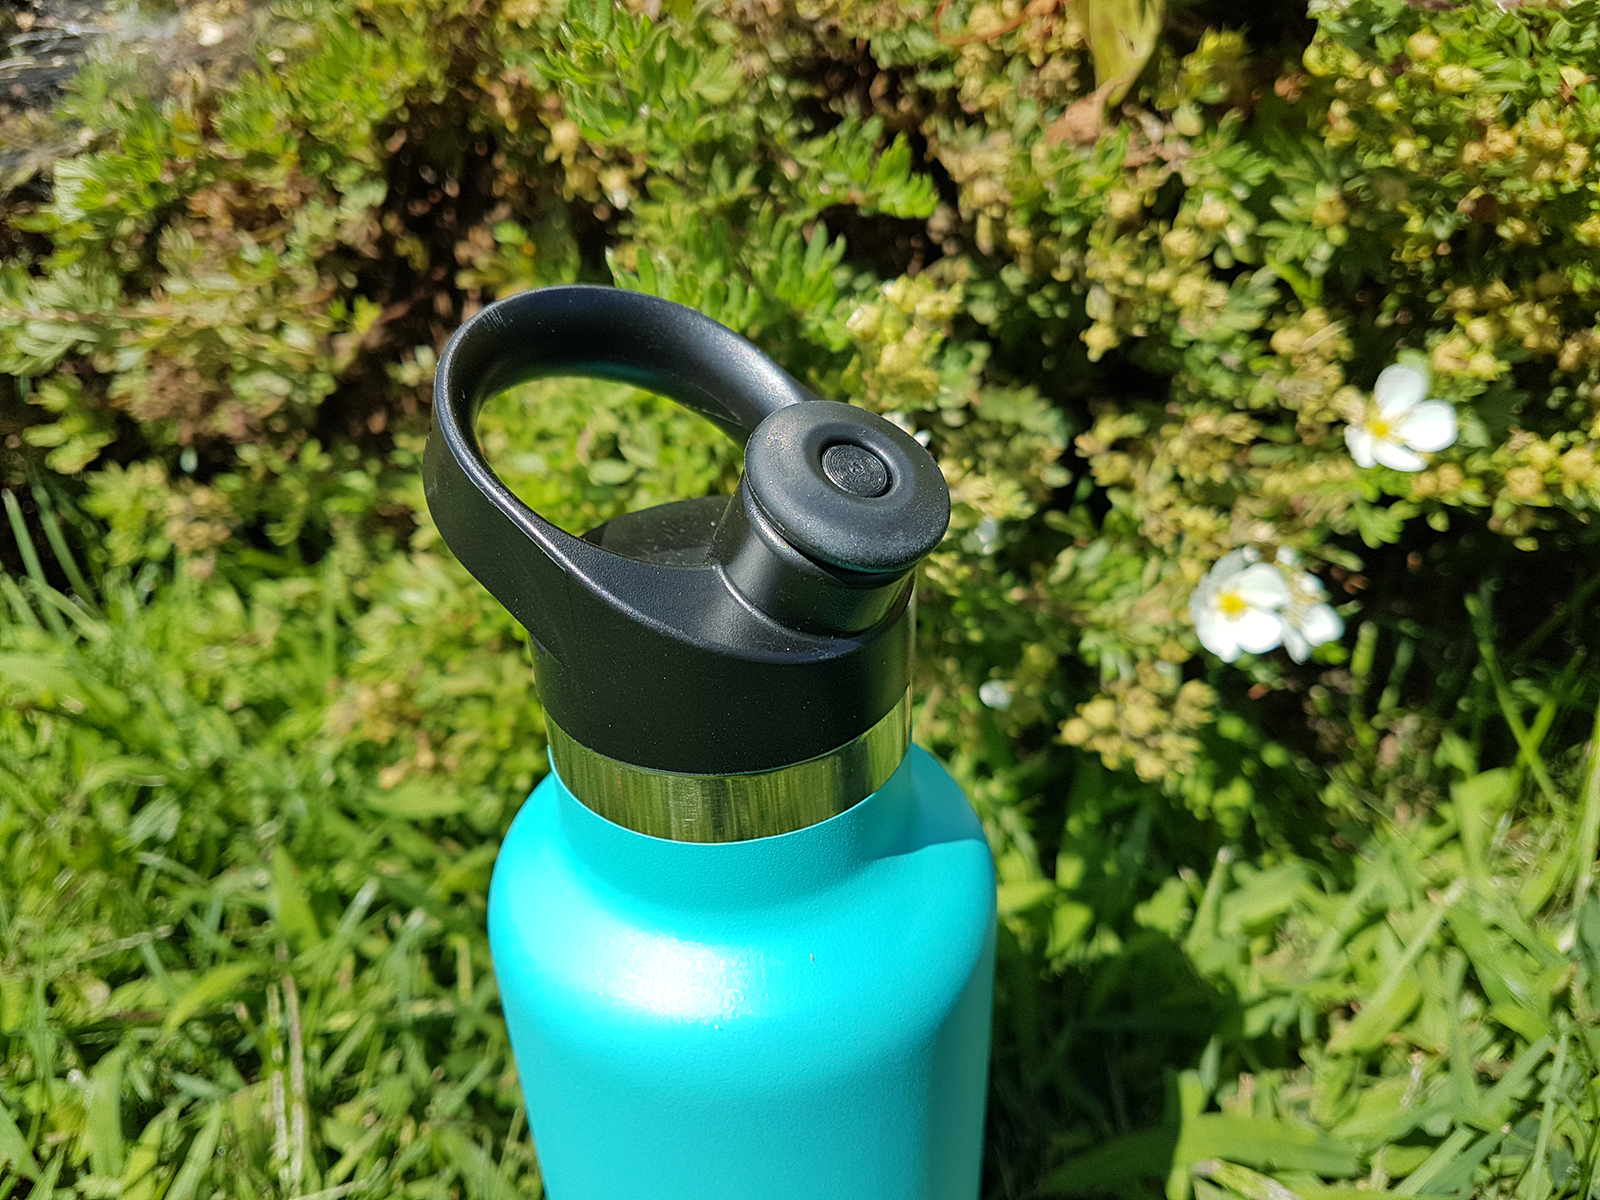 Gear review: Hydro Flask water bottle